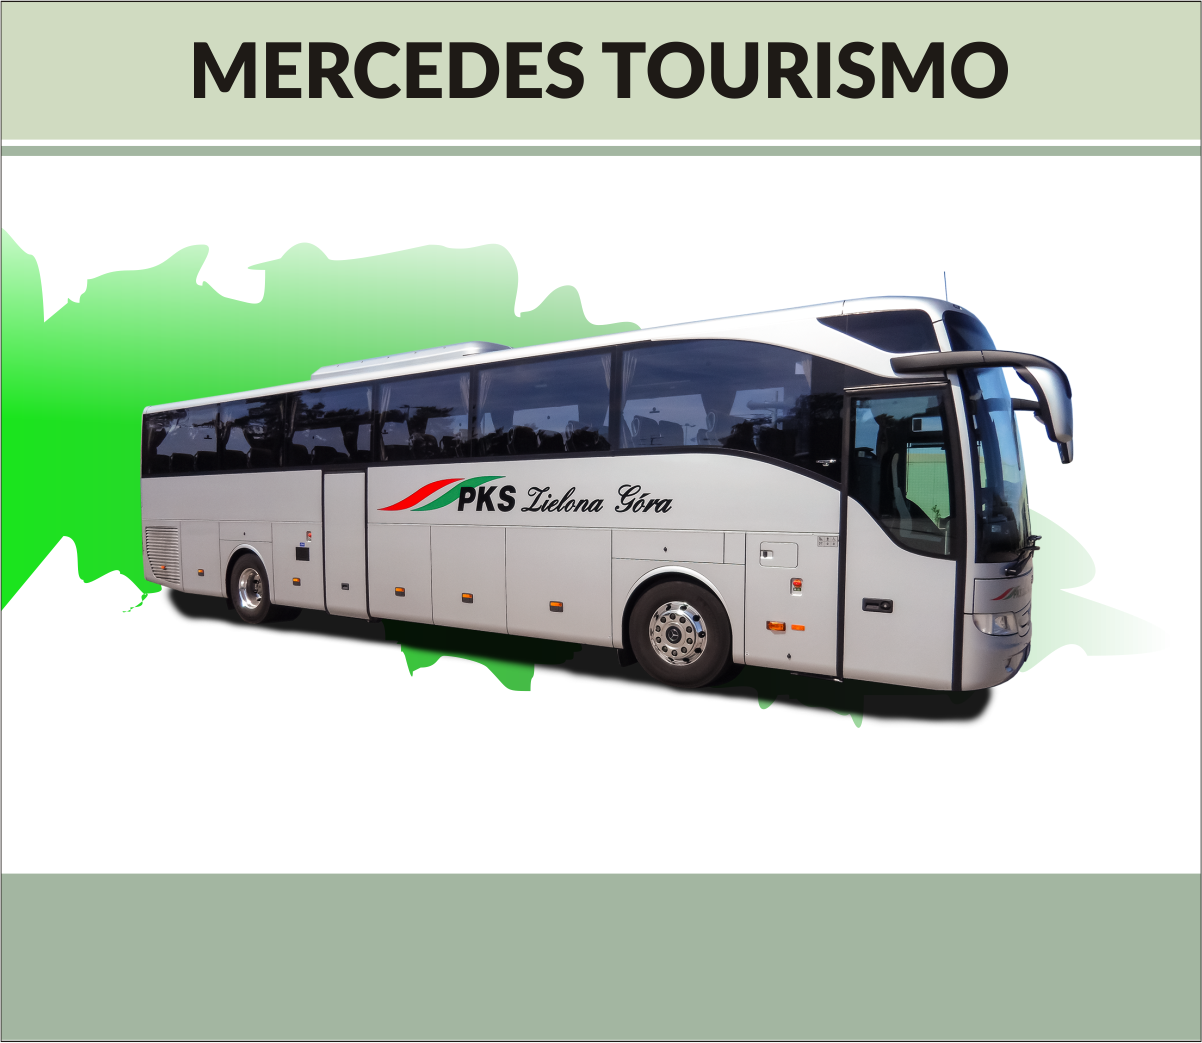 MERCEDES TOURISMO